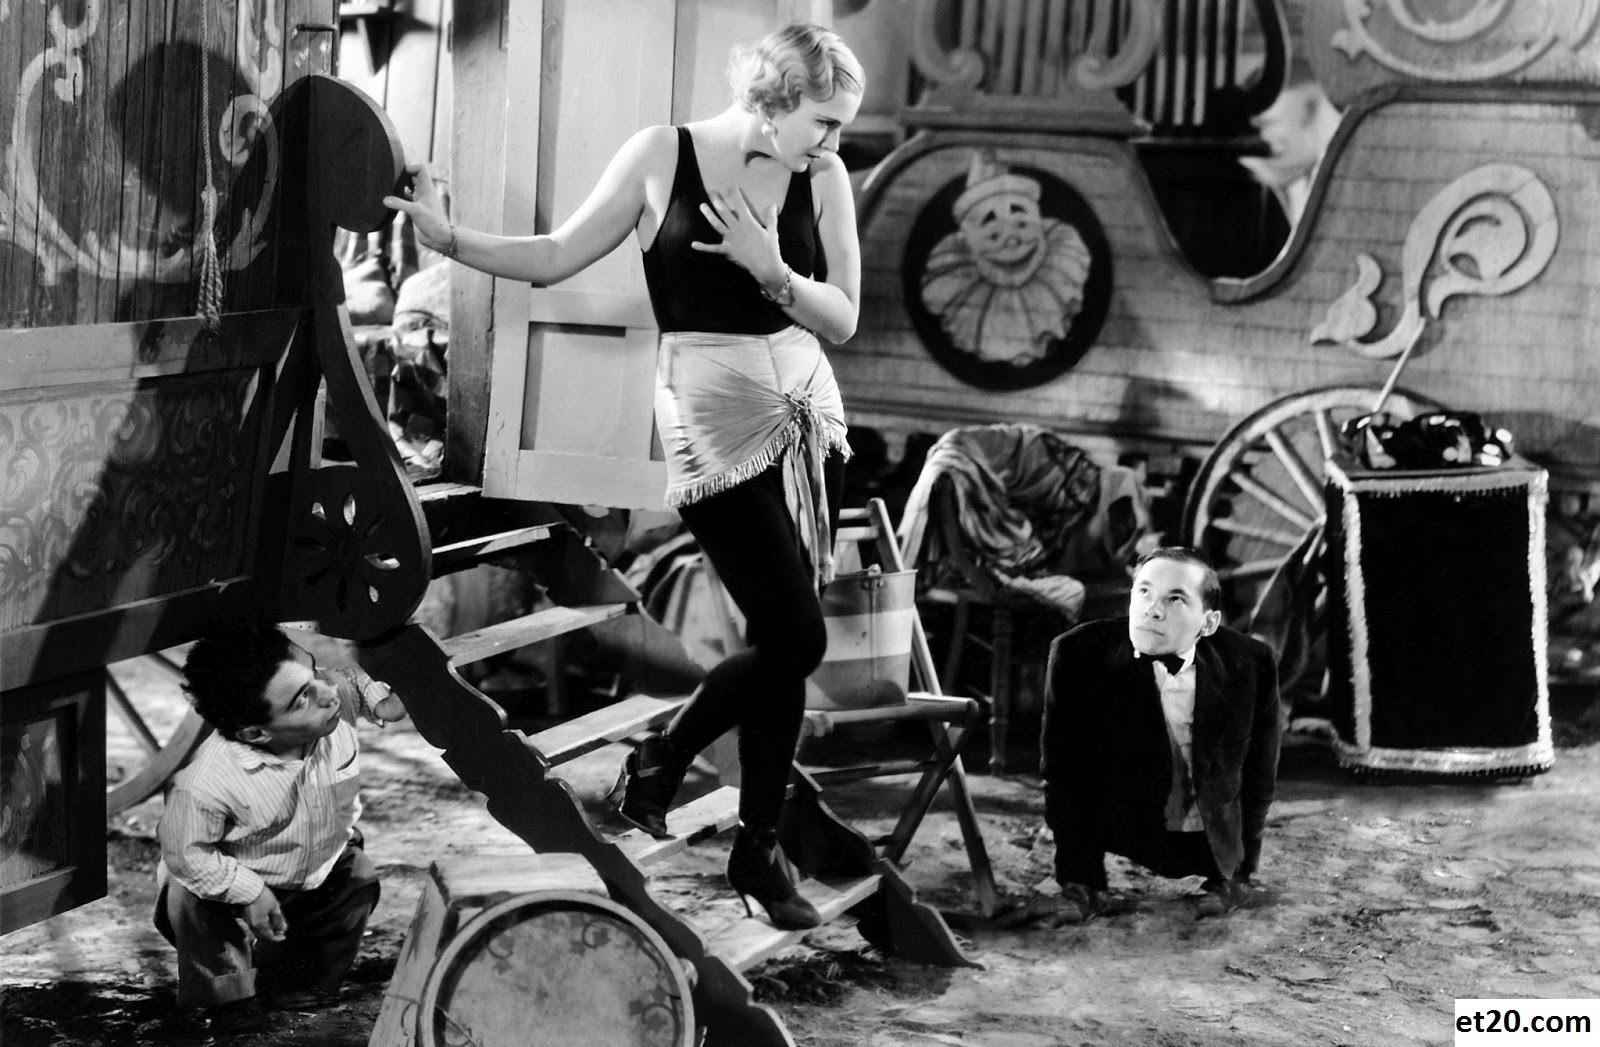 Plot Film Freaks, Film Horor Tahun 1932